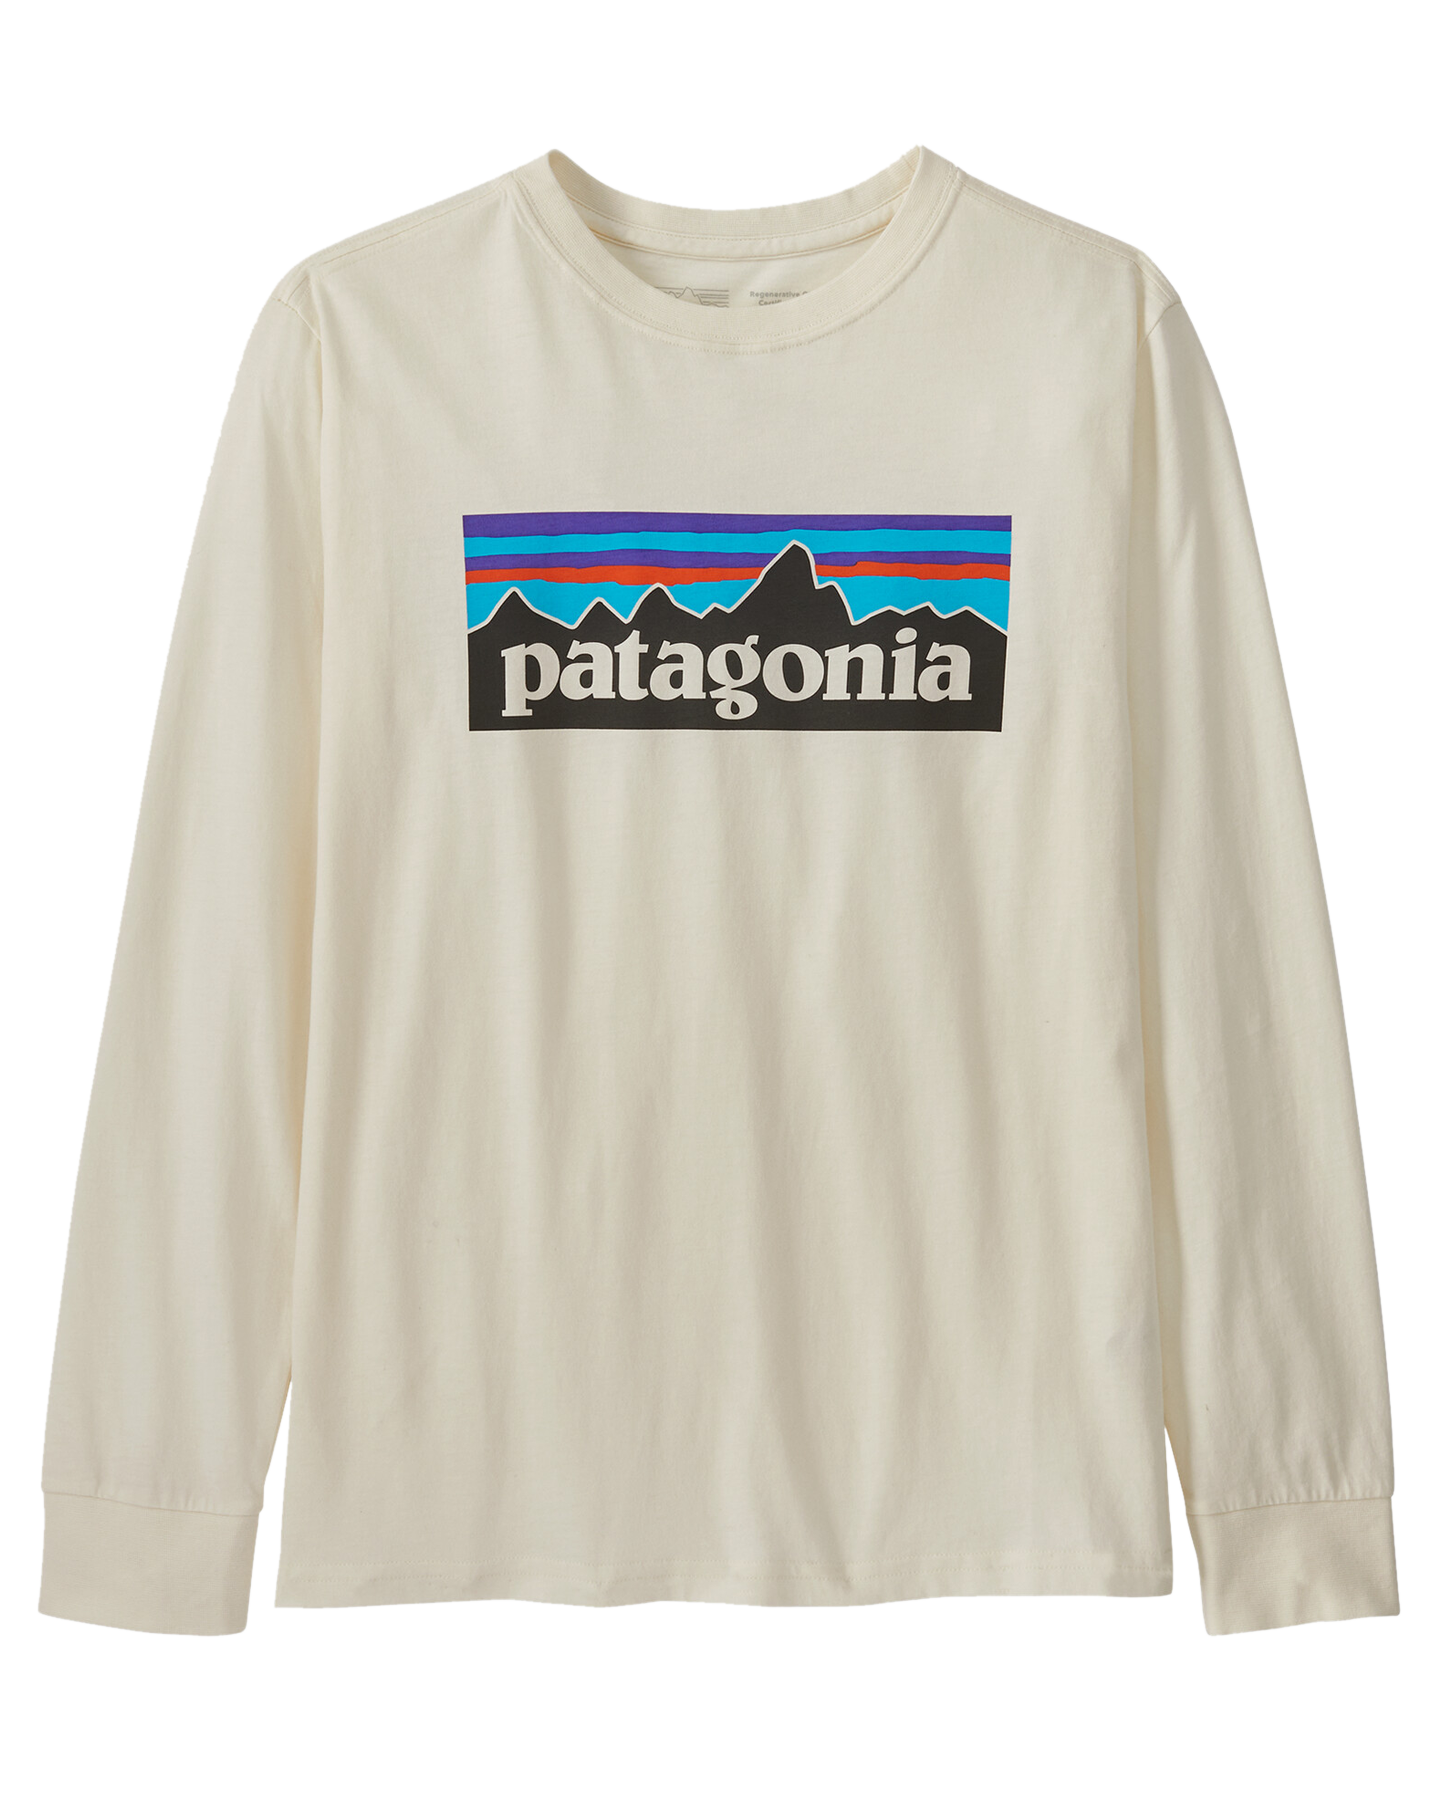 Patagonia Kids' Long Sleeve Regenerative Organic Certified Cotton P-6 T-Shirt - Undyed Natural Hoodies & Sweatshirts - Trojan Wake Ski Snow